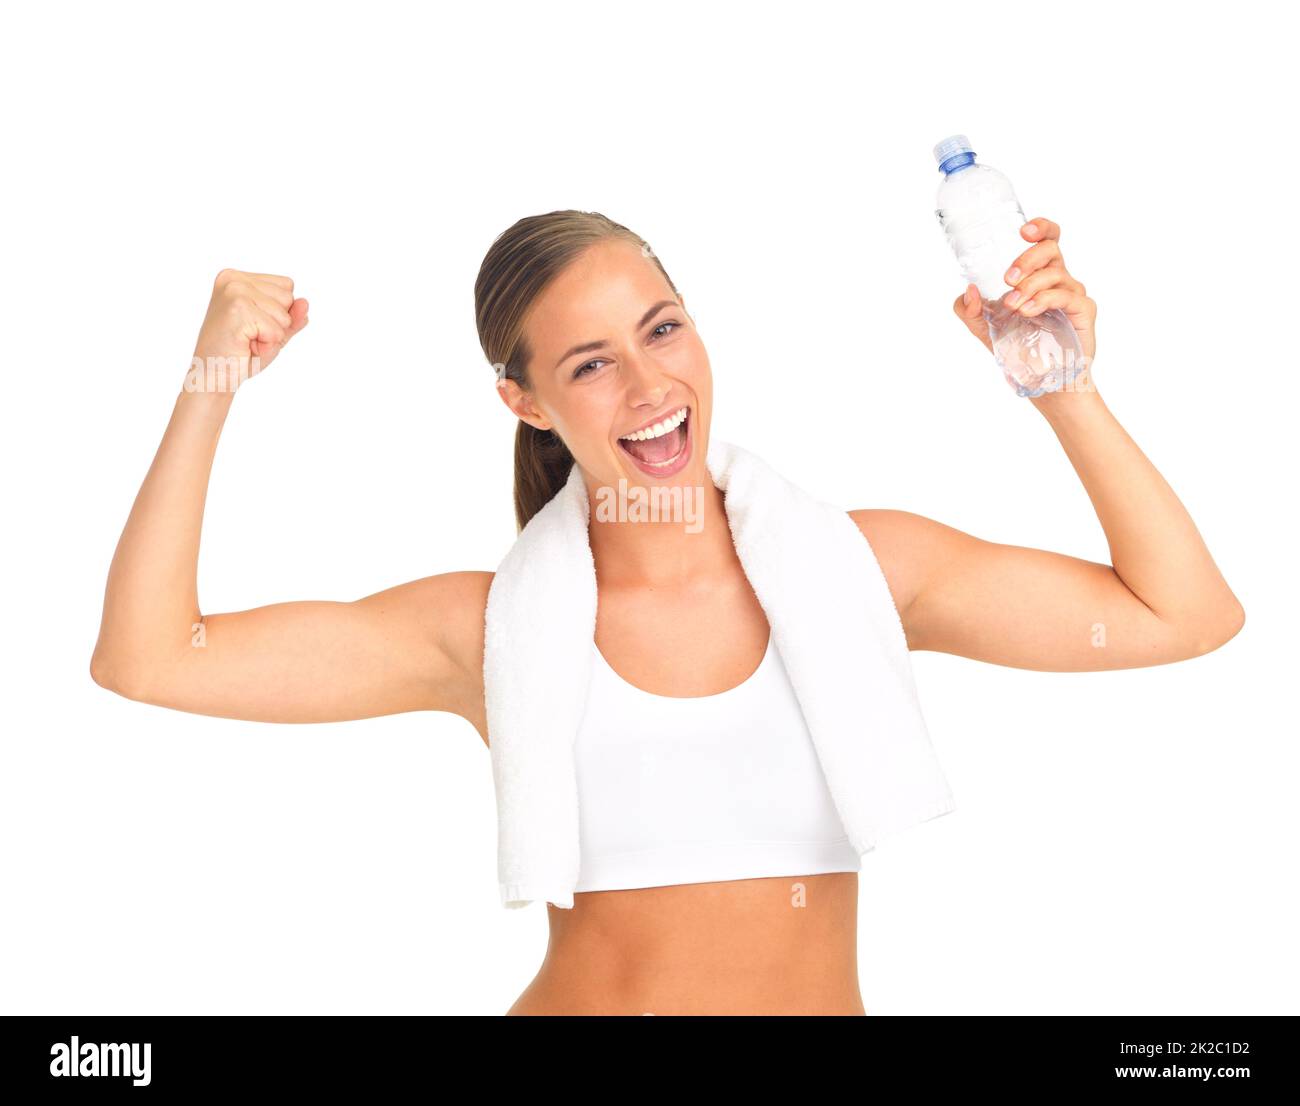 Sie ist positiv über ihren gesunden Lebensstil. Studioportrait einer sportlichen jungen Frau isoliert auf Weiß. Stockfoto